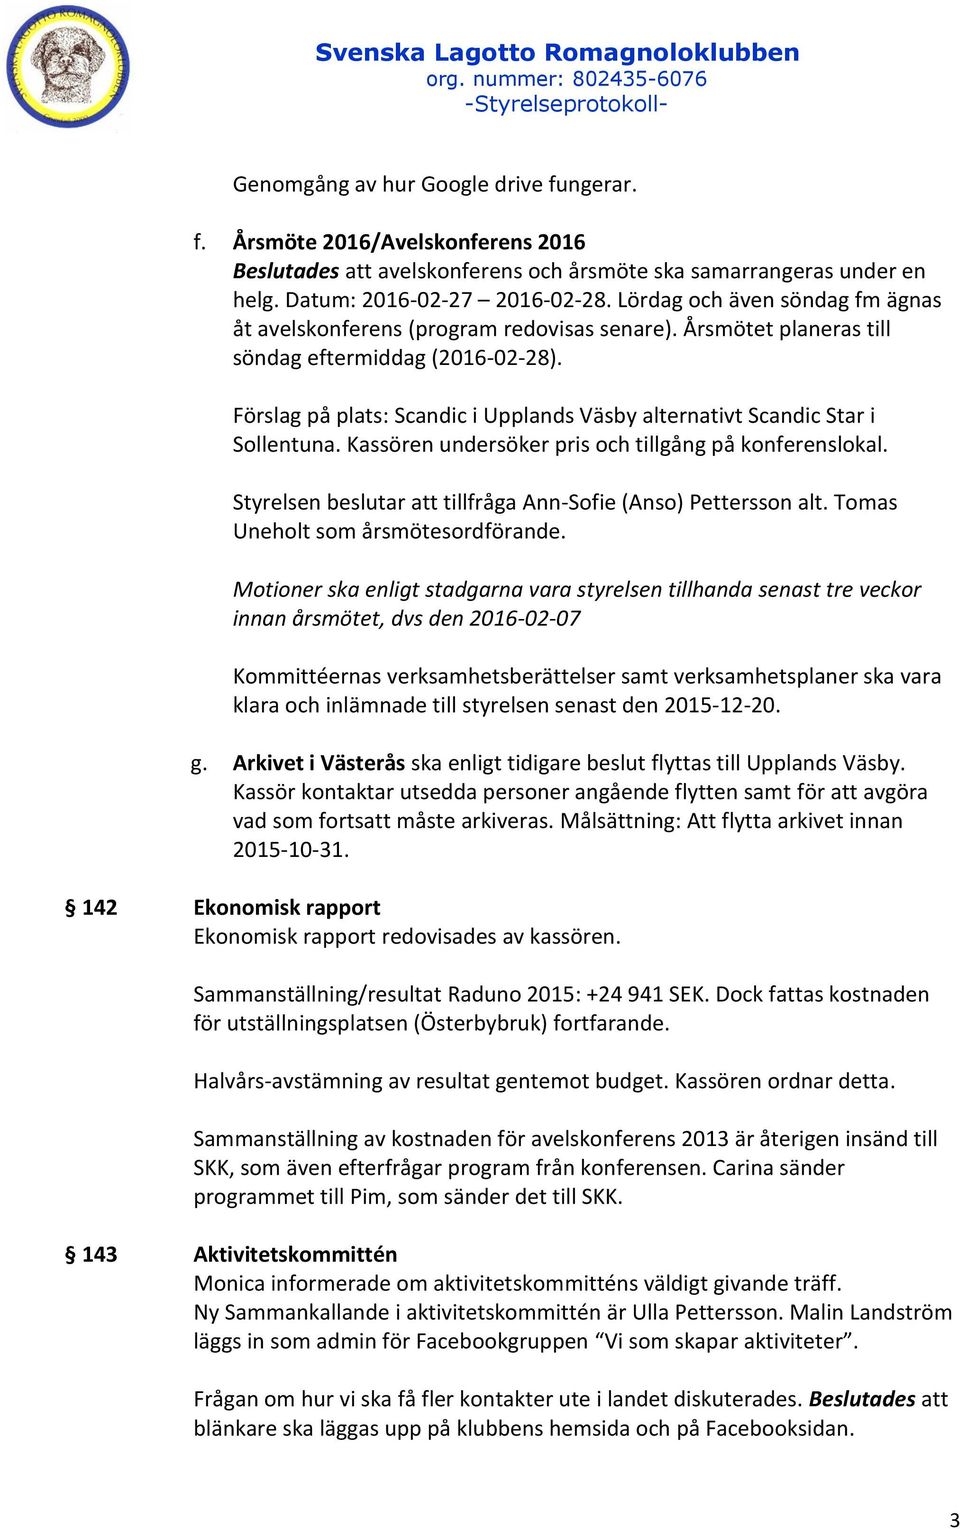 Förslag på plats: Scandic i Upplands Väsby alternativt Scandic Star i Sollentuna. Kassören undersöker pris och tillgång på konferenslokal.